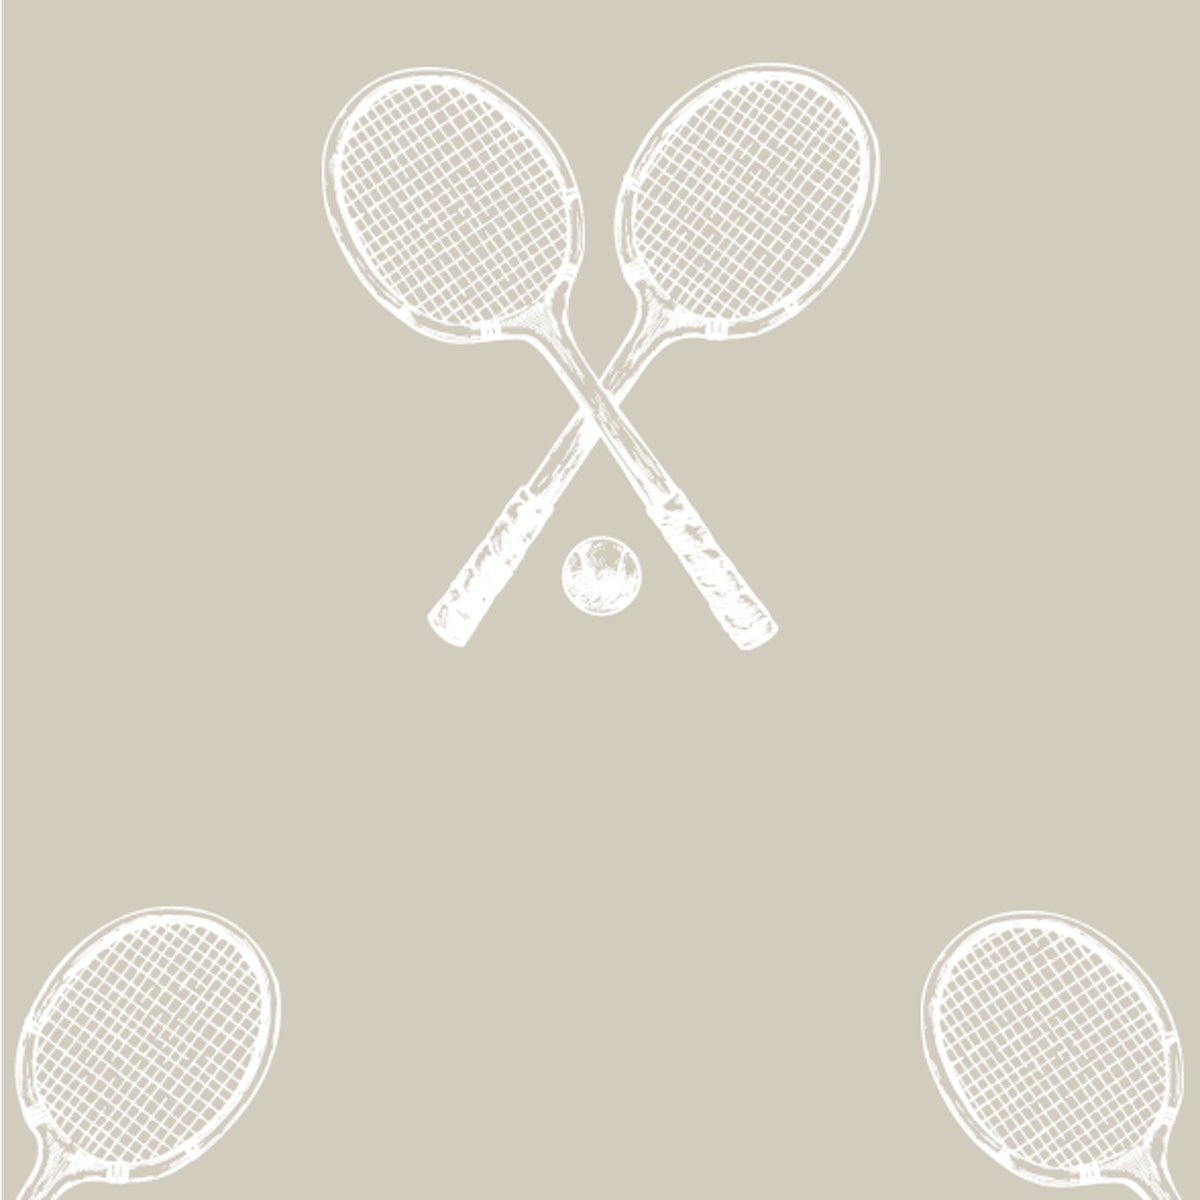 MH Wallpaper - Racquet